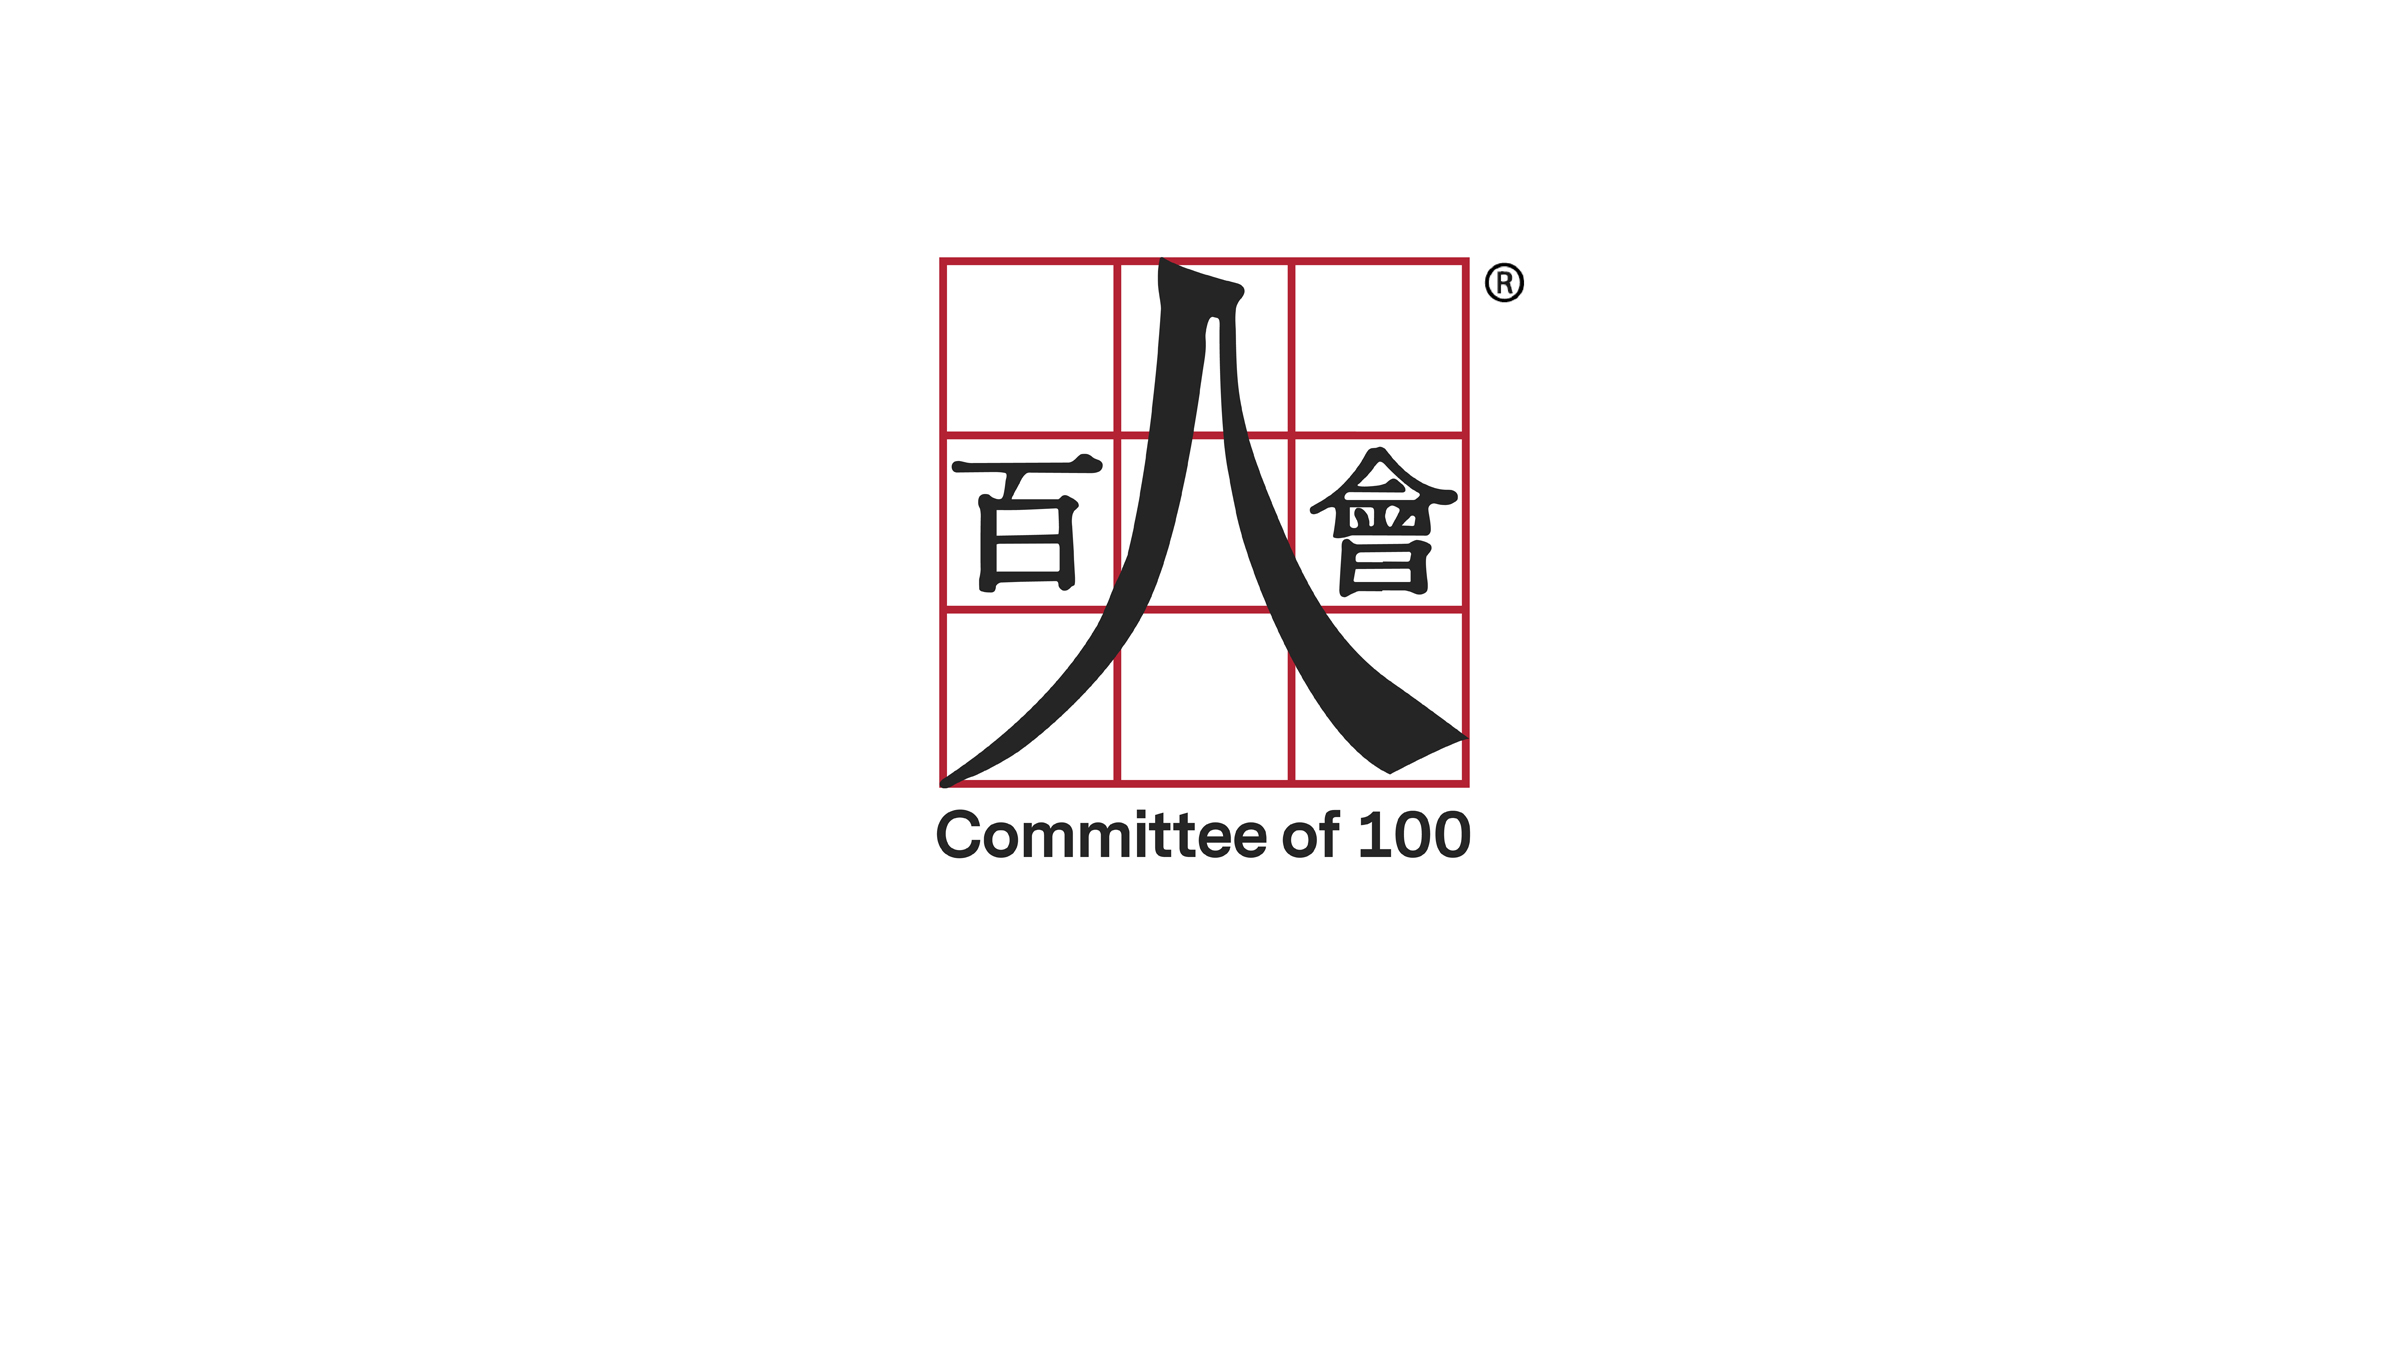 Committee of 100 Welcomes Nine New Members